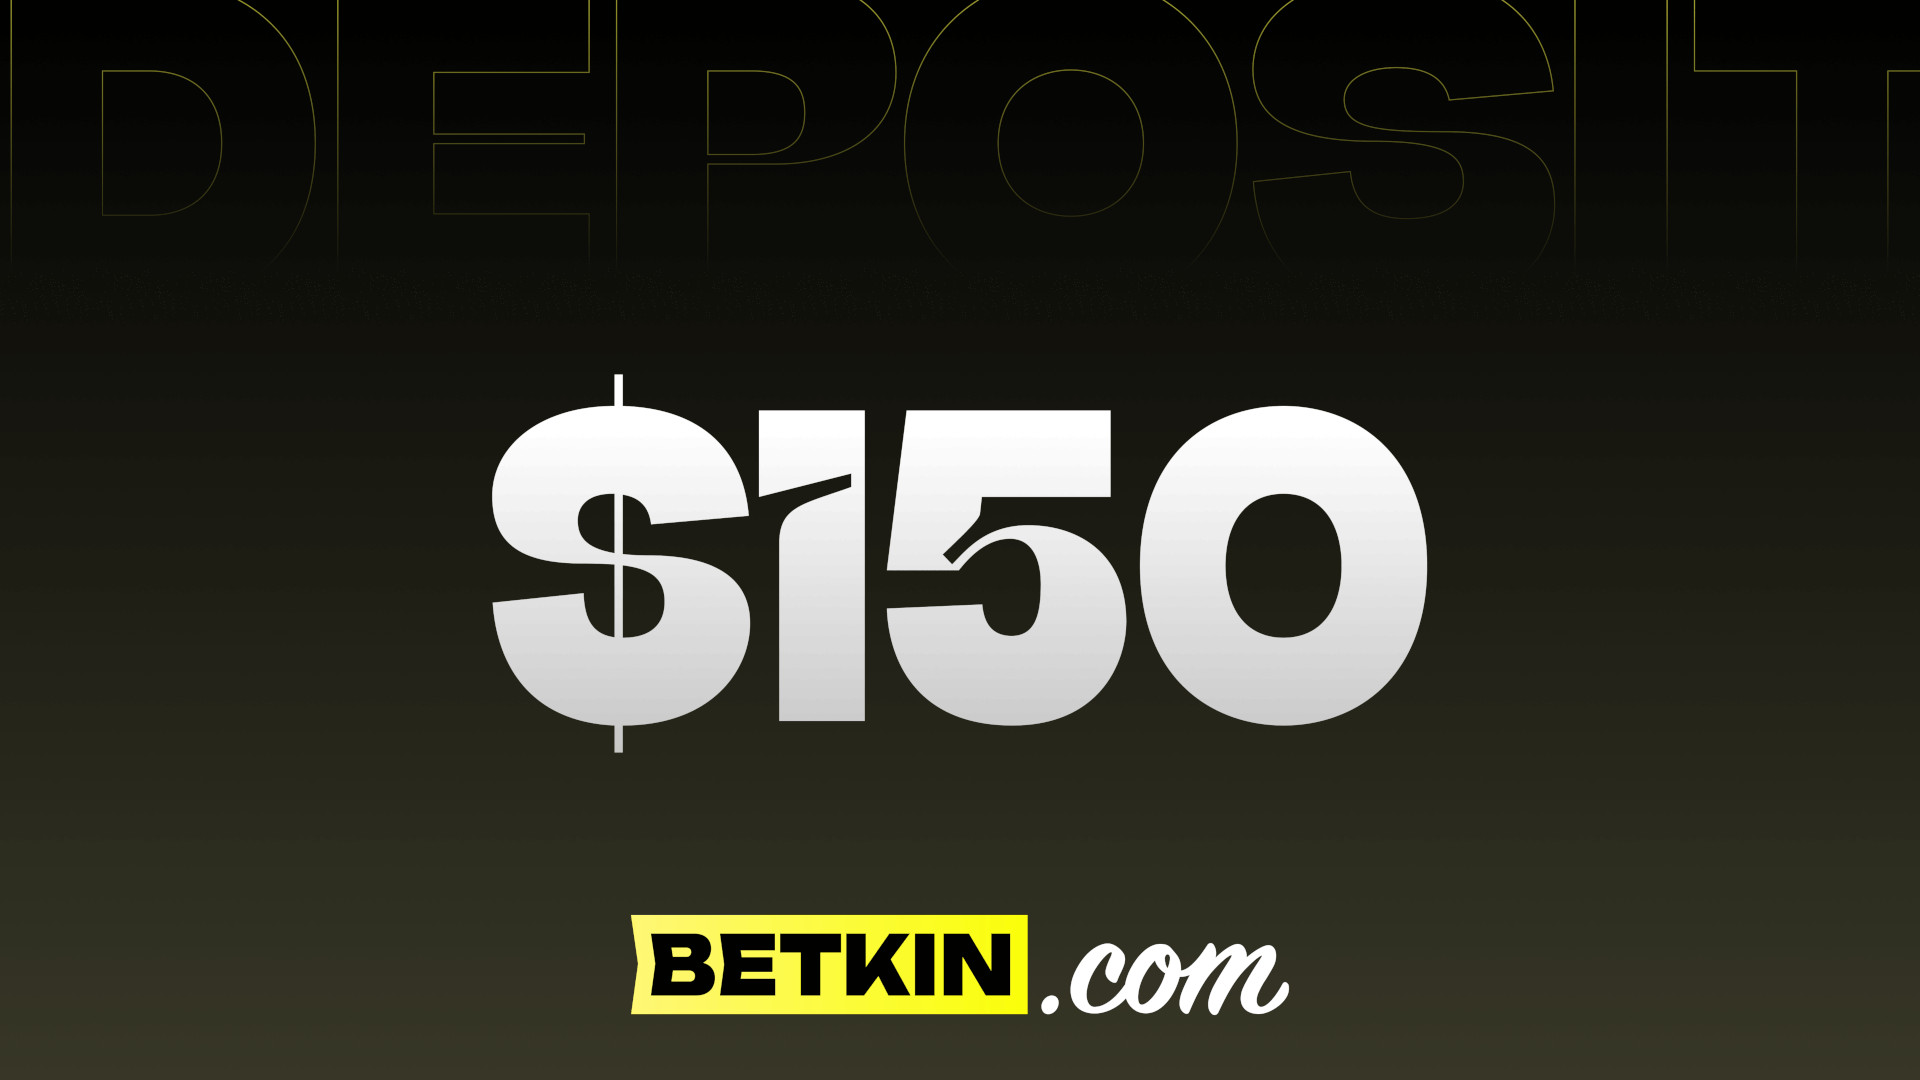 Betkin $150 Coupon 166.96$